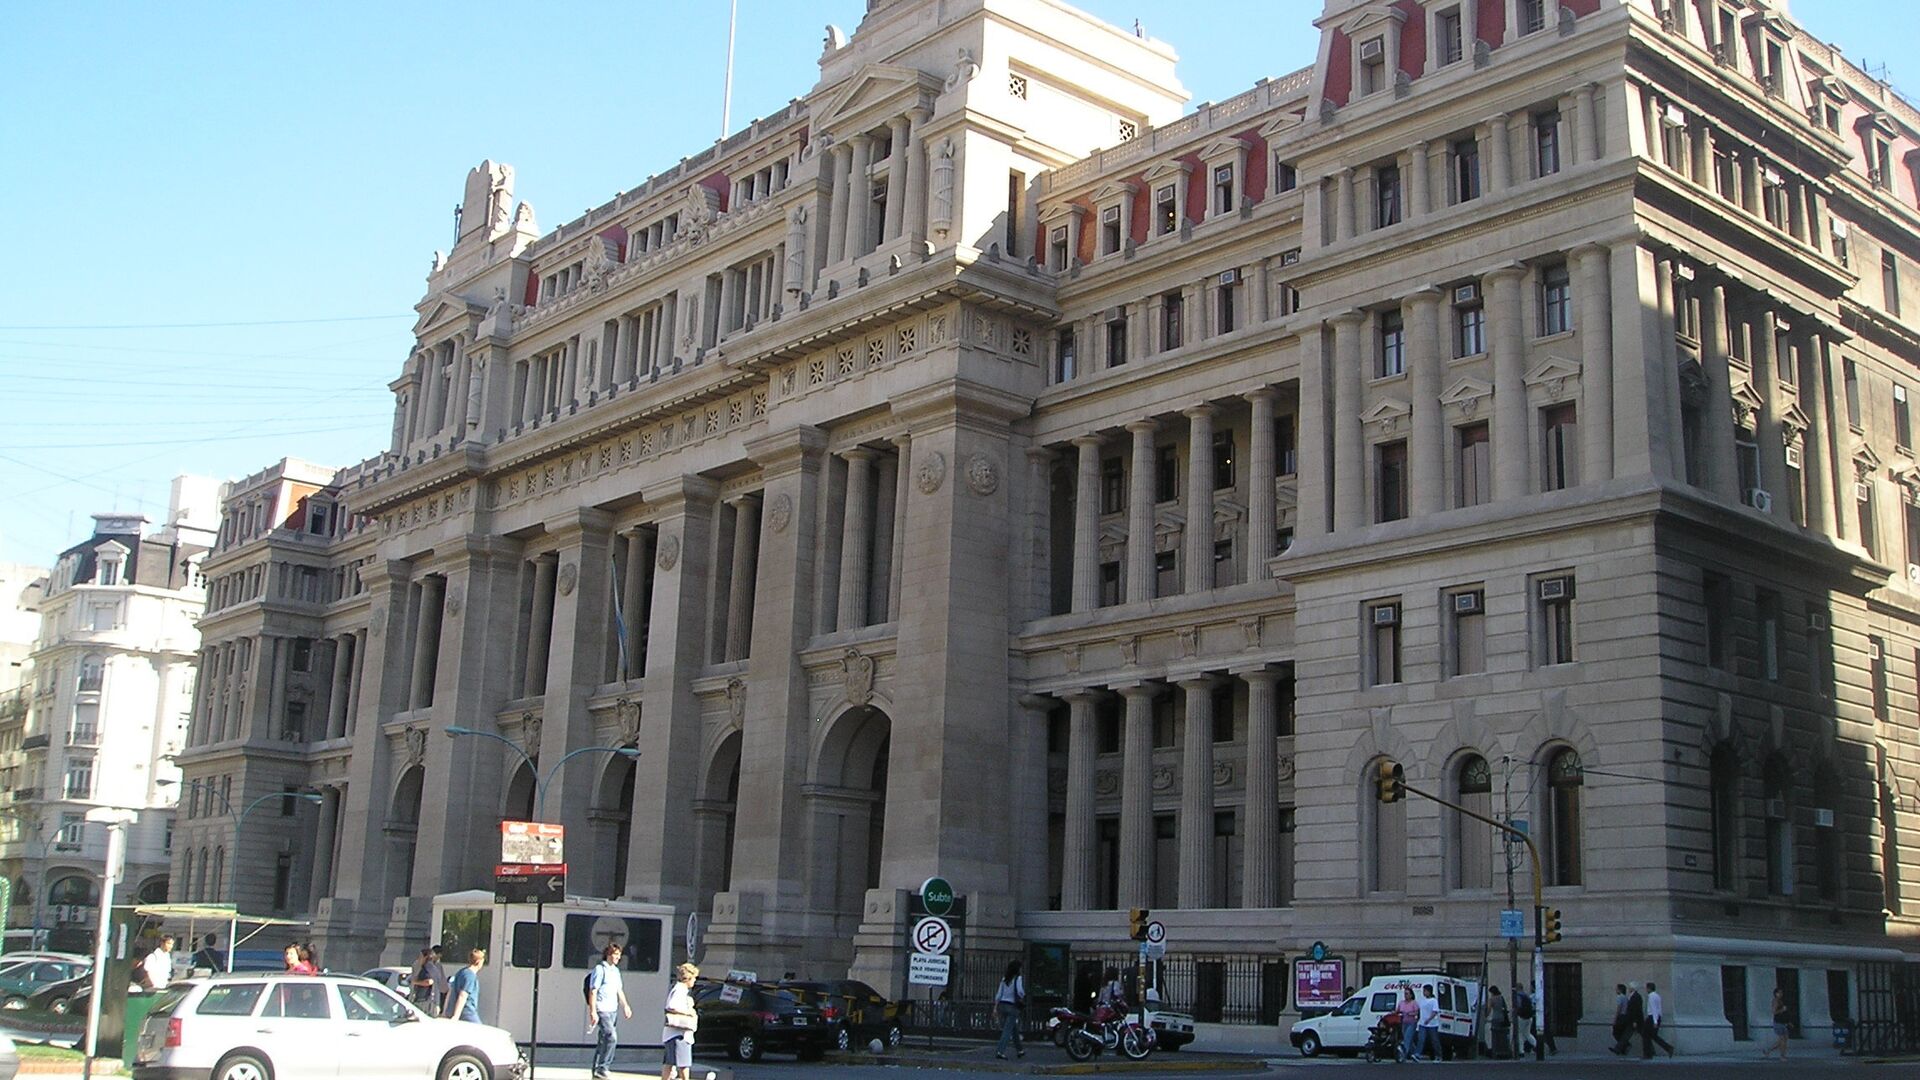 Palacio de Justicia, sede de la Corte Suprema de Justicia de Argentina - Sputnik Mundo, 1920, 12.12.2022